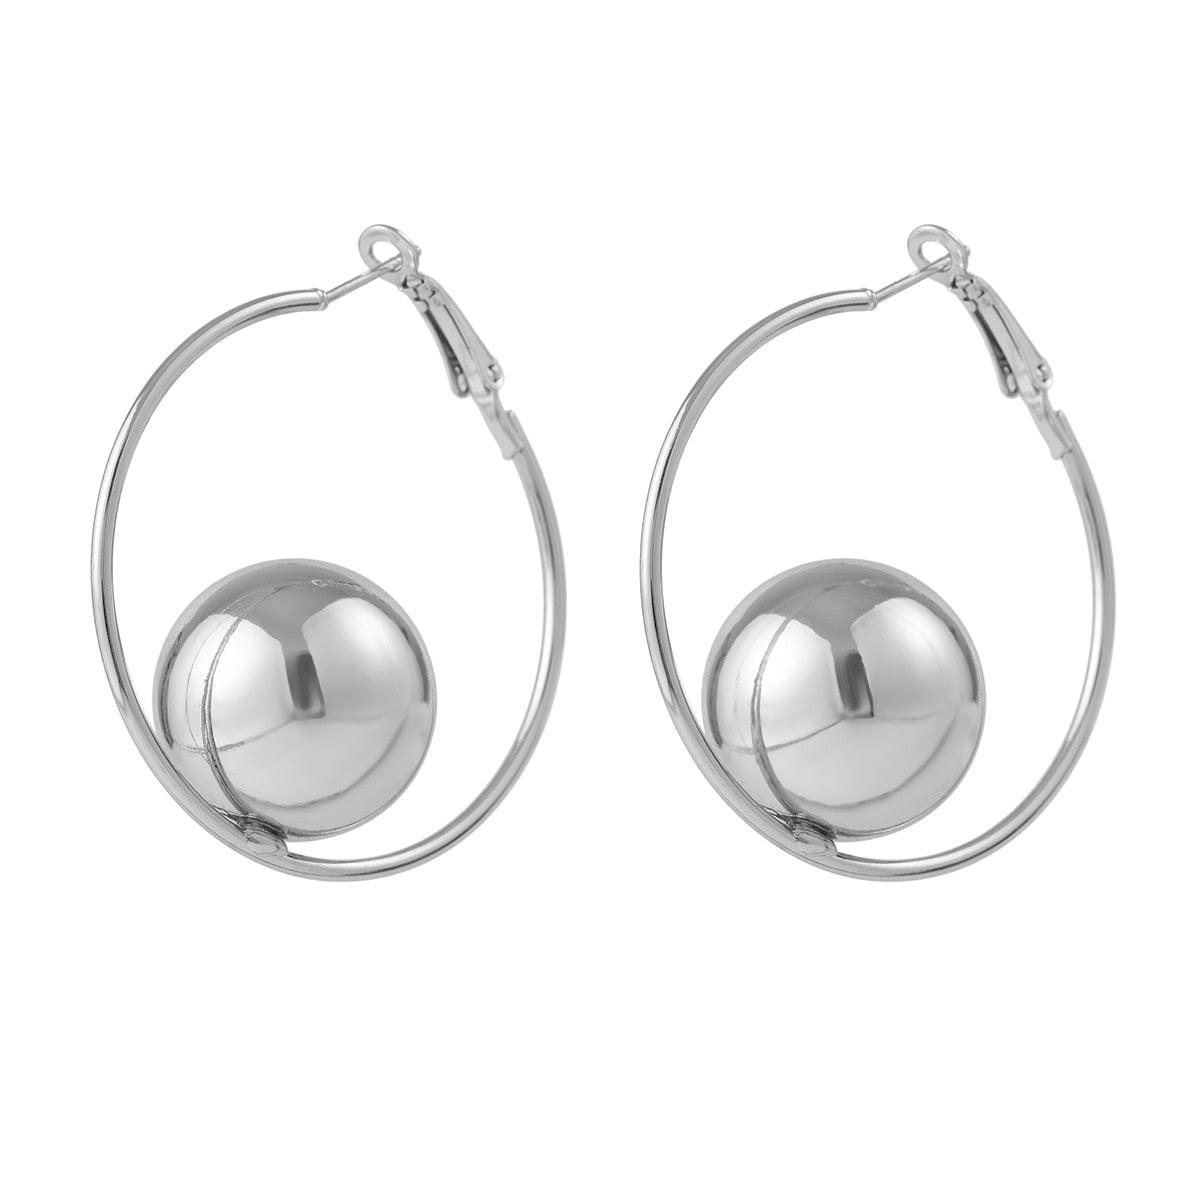 SW Circular Ball Hoop Earrings Silver Version